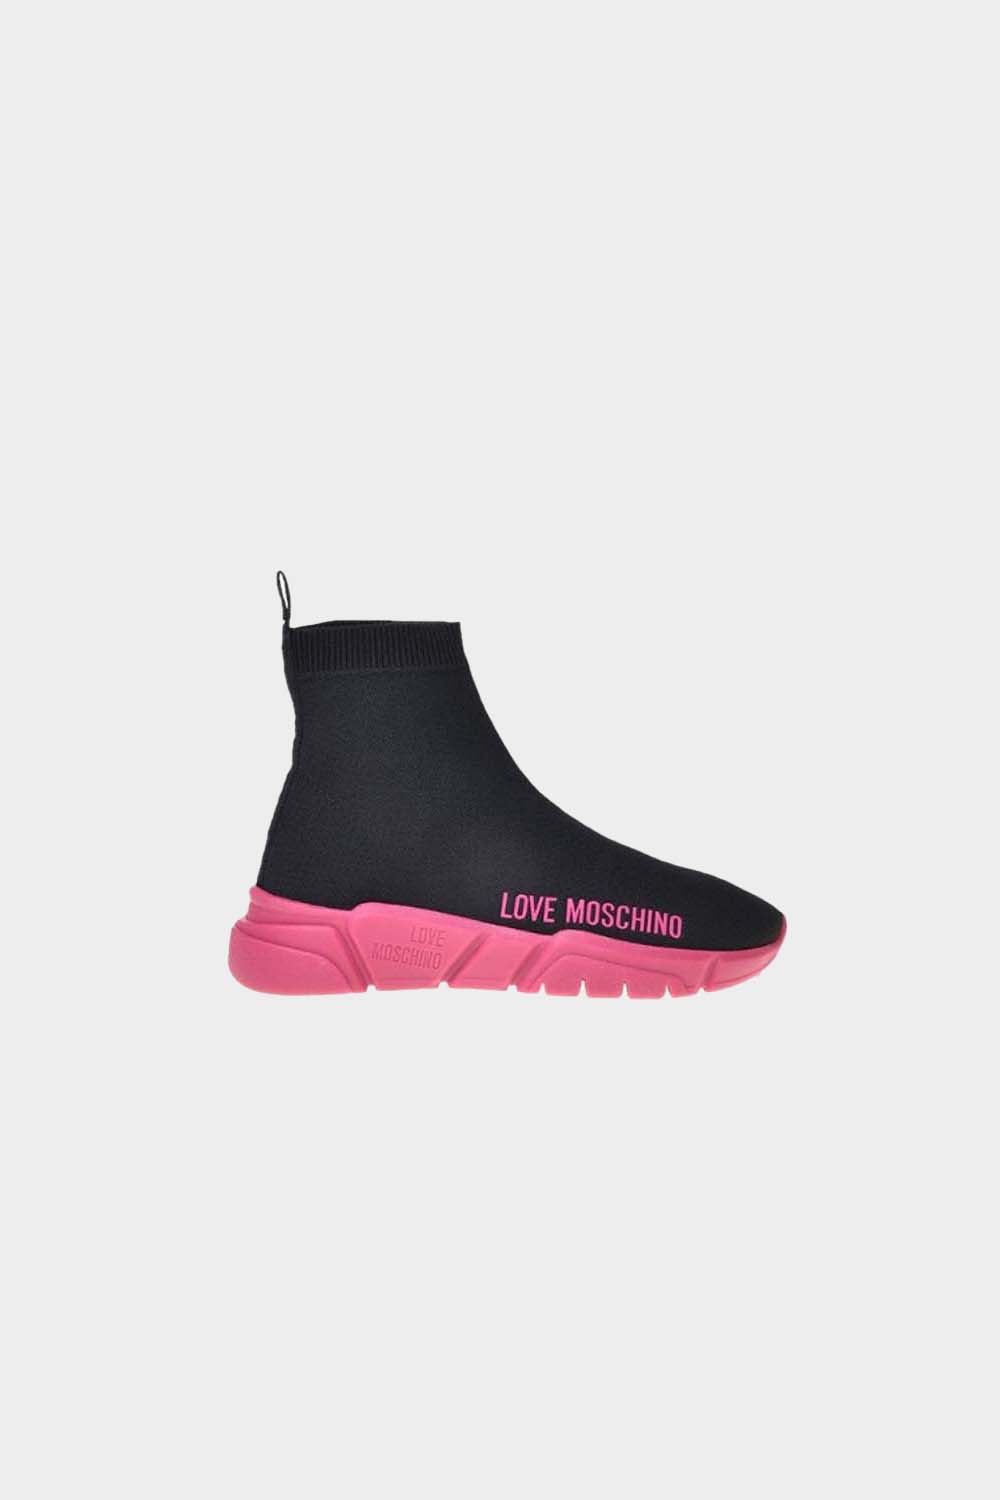 נעלי גרב לנשים לוגו MOSCHINO Vendome online | ונדום .